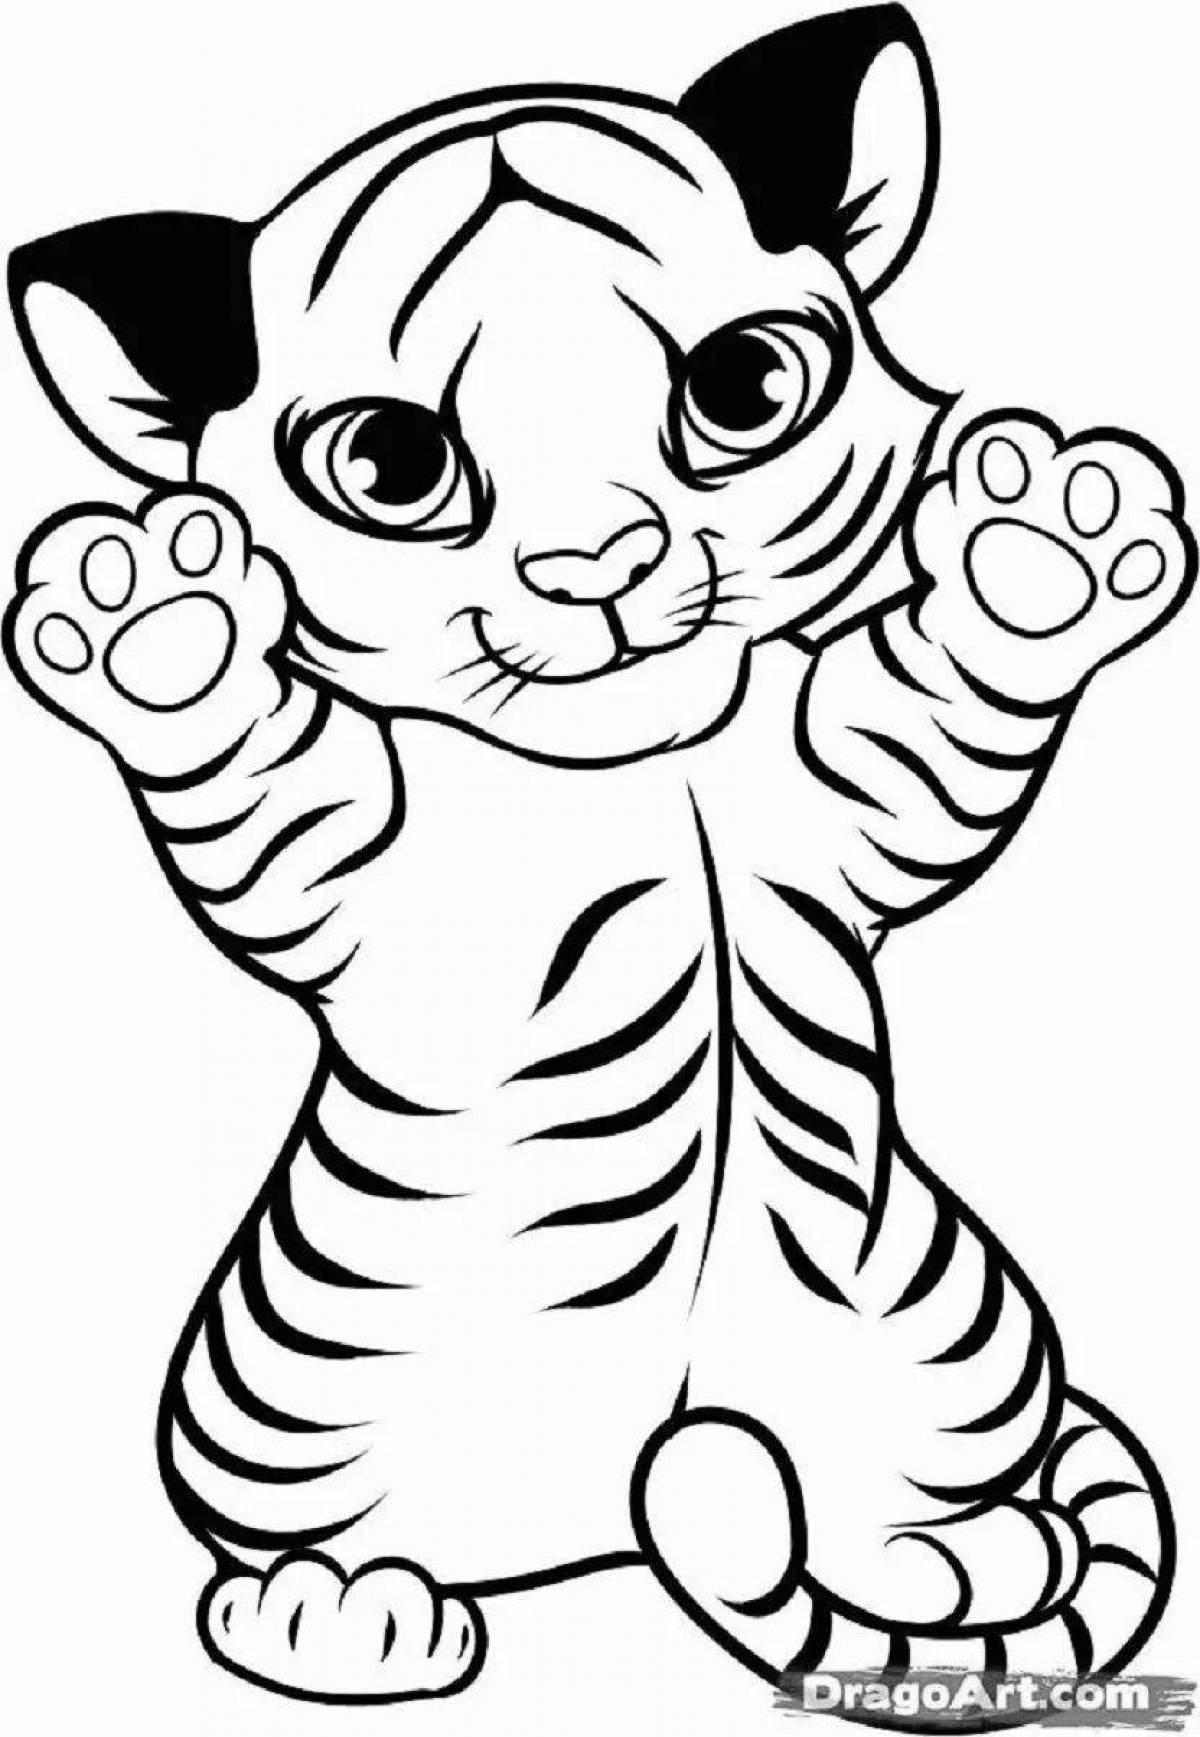 Сложная страница раскраски тигра для детей